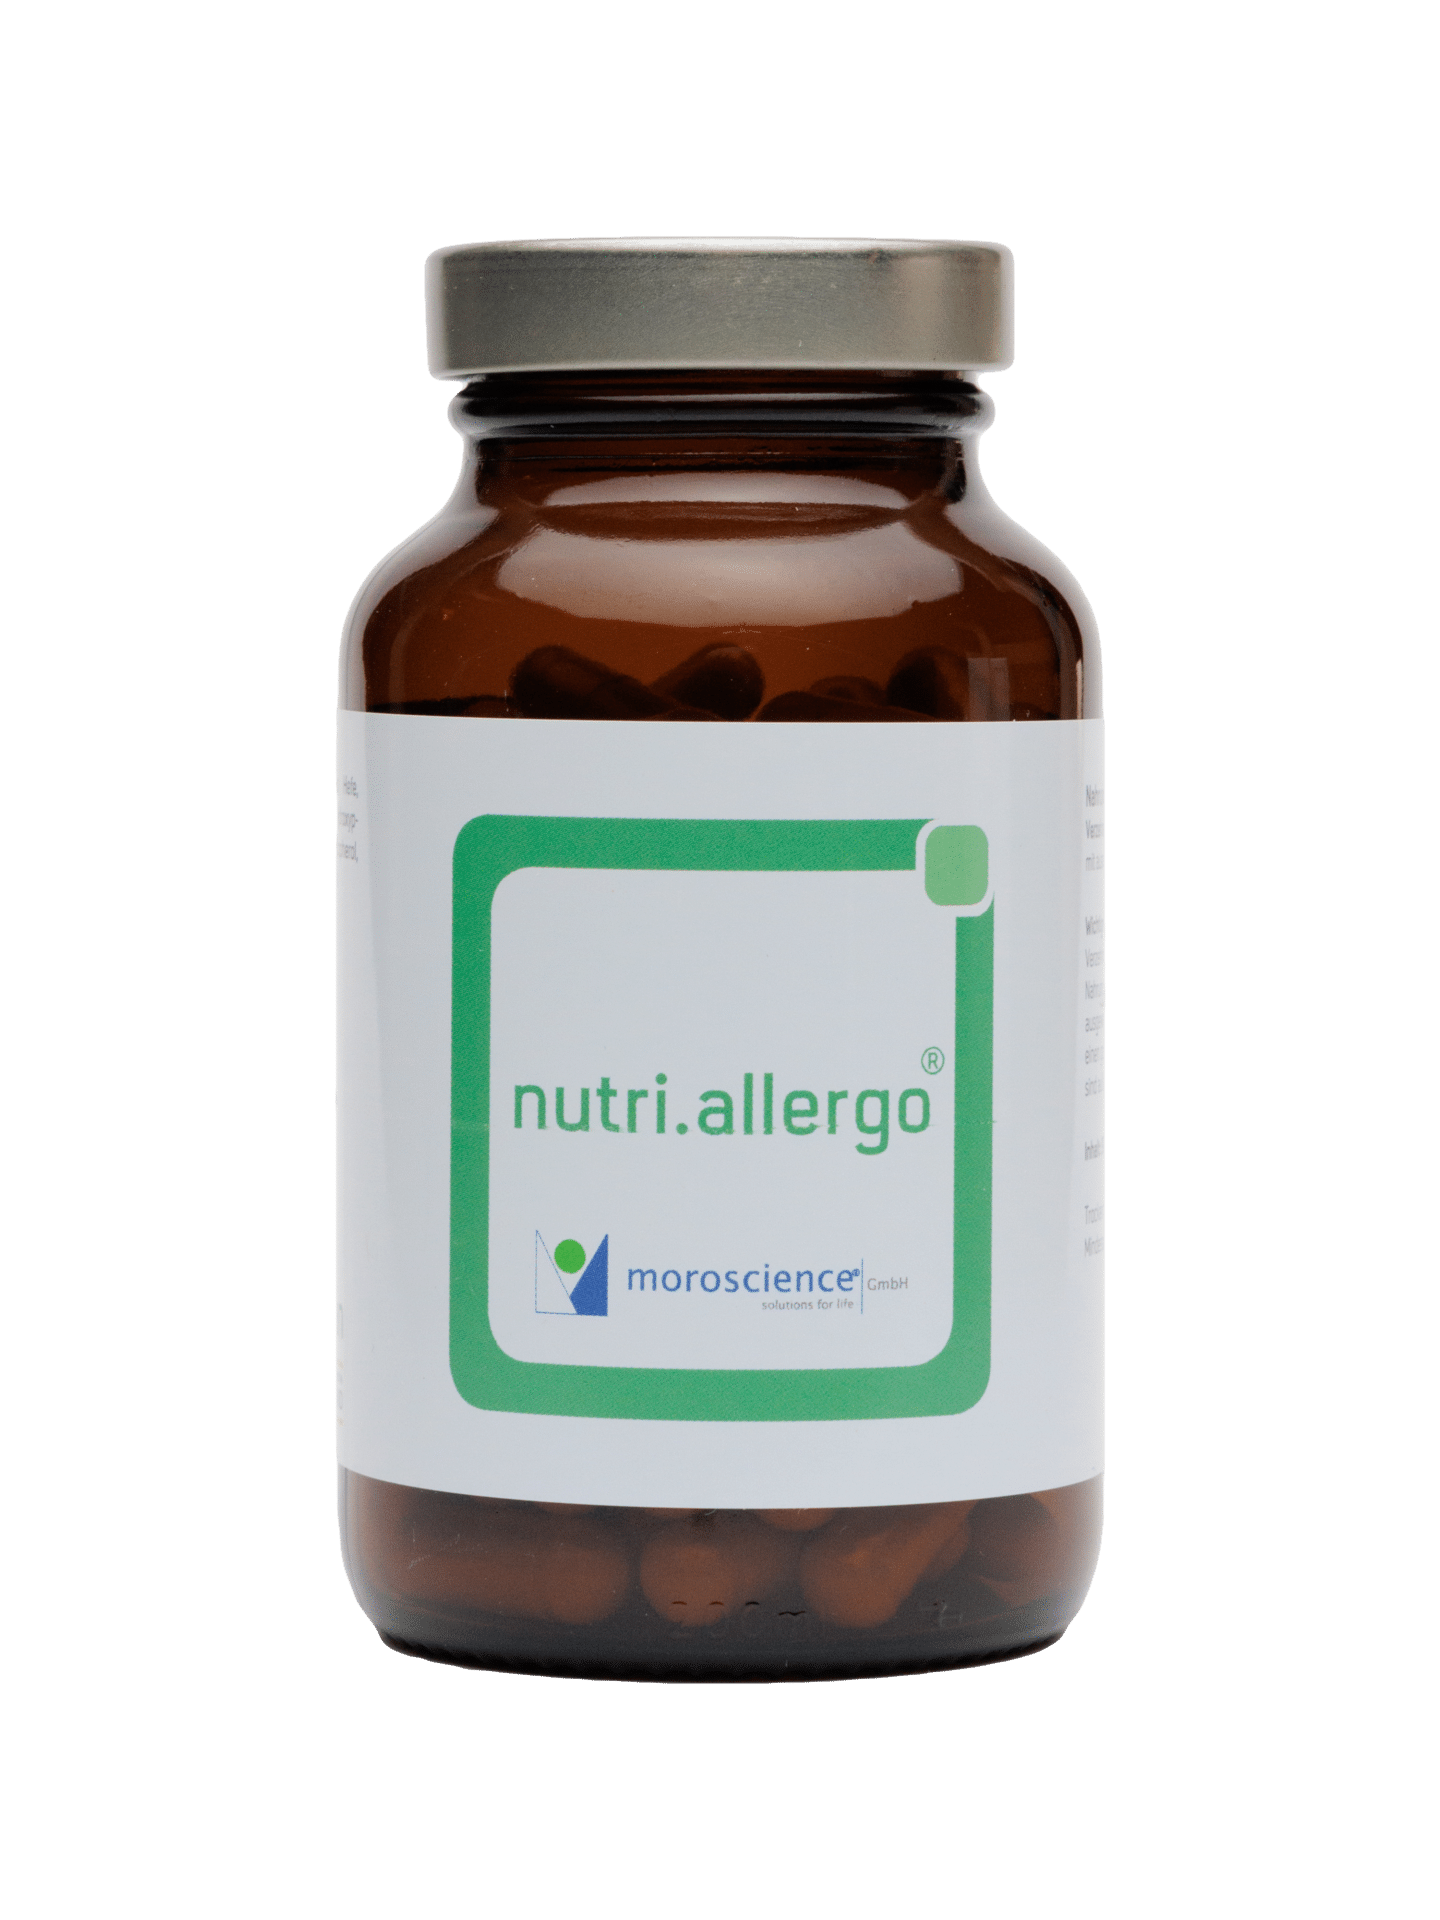 nutri-allergo-png-front